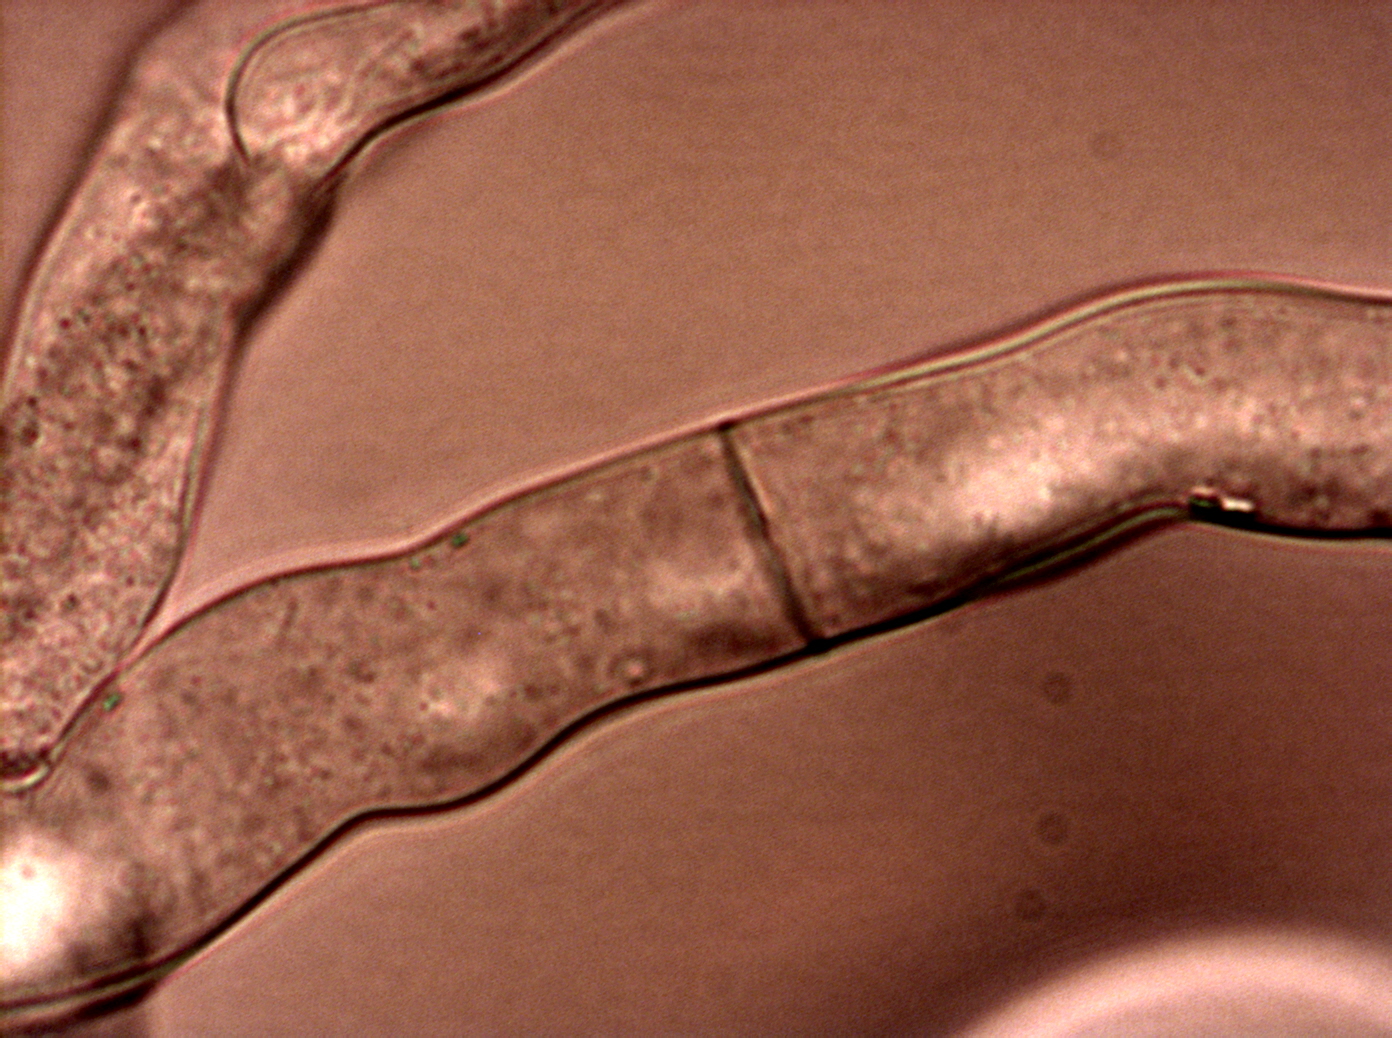 Hyphae of Neurospora crassa with septum and porus.